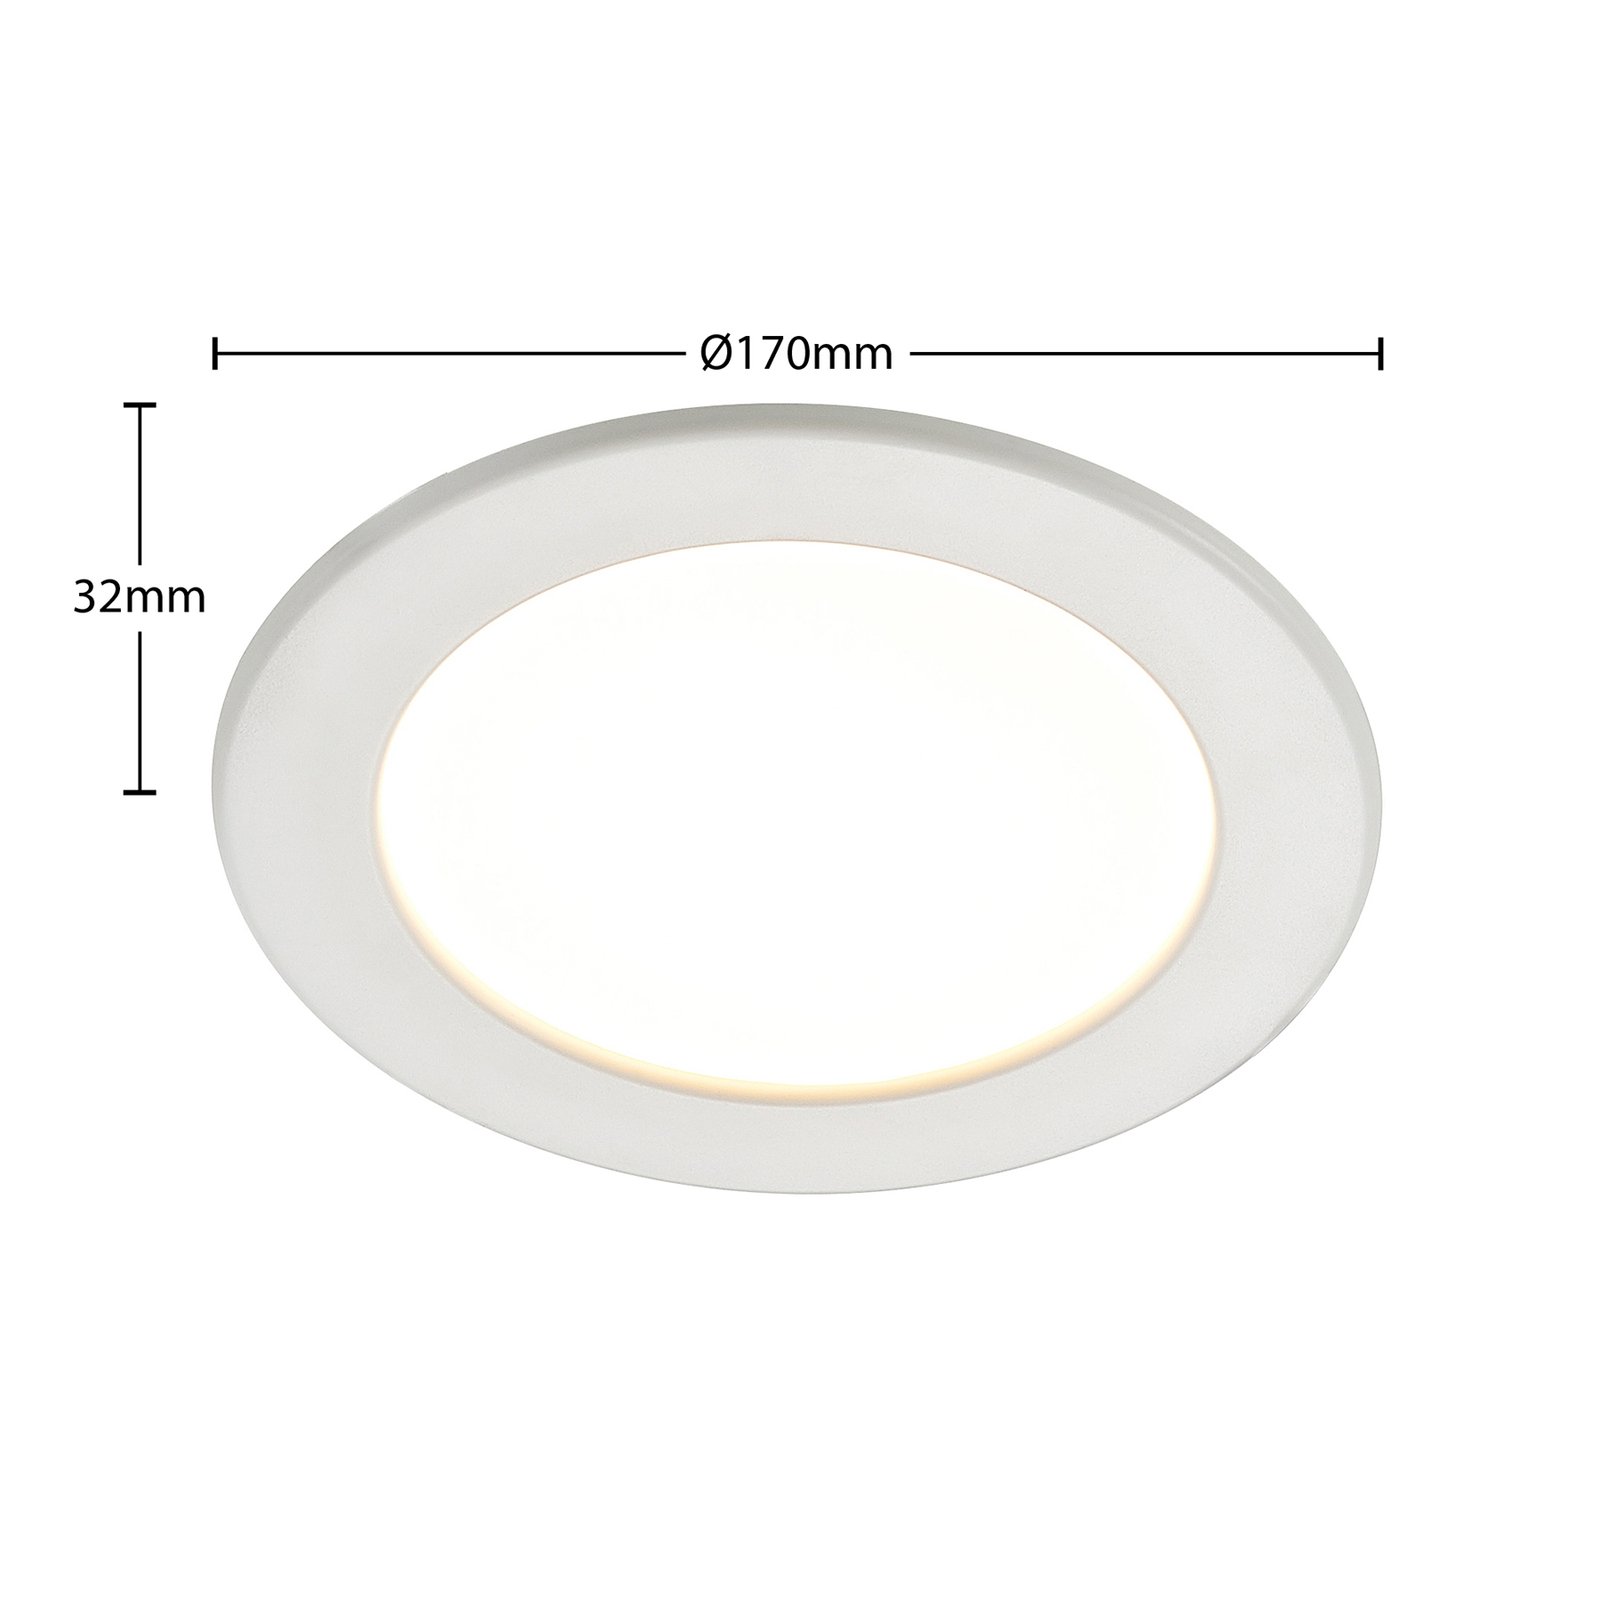 Prios lampe encastrable LED Cadance, blanc, 17 cm, par 10, intensité